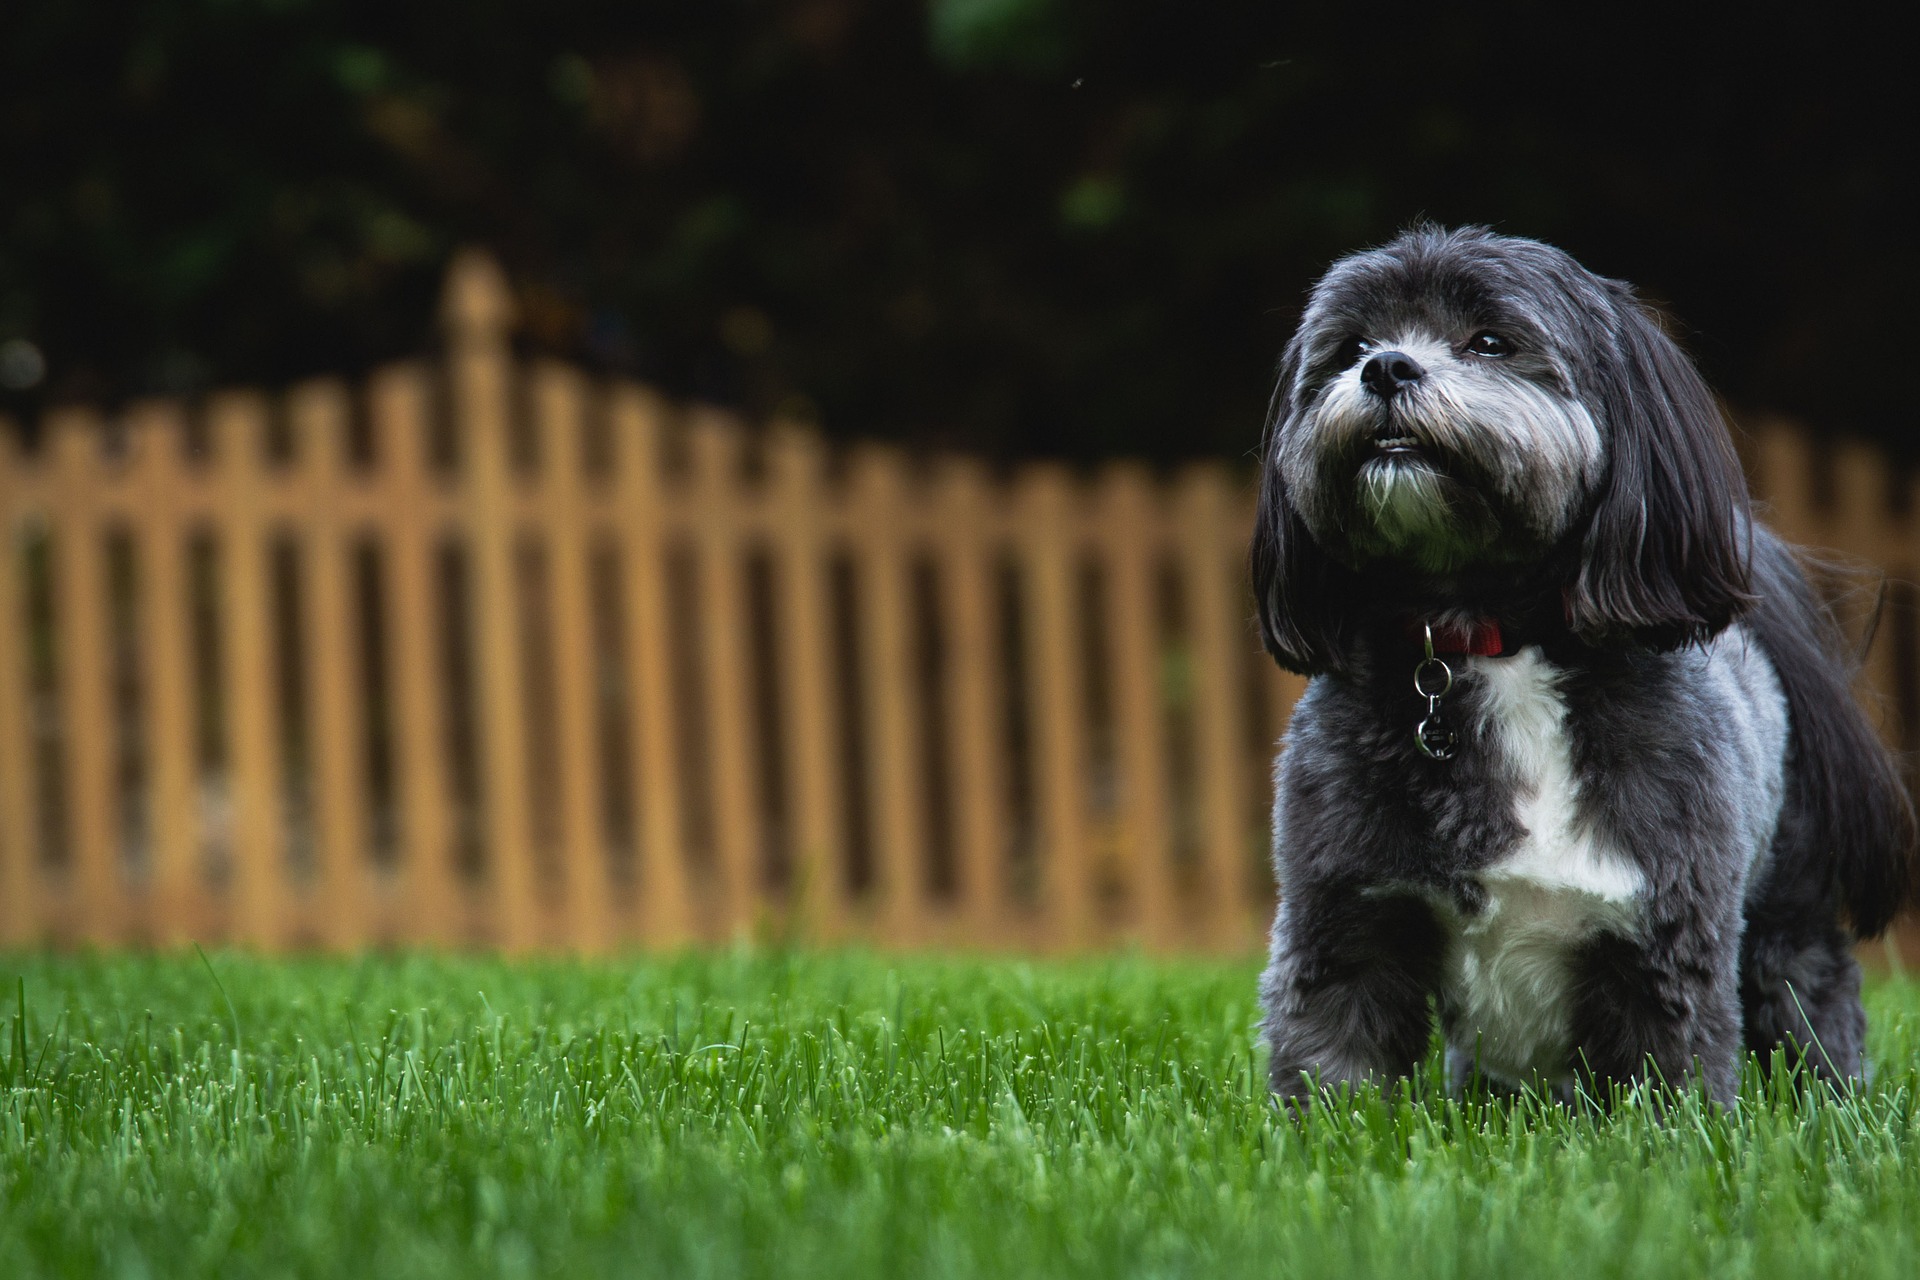 Der Shih tzu ist ein kleiner Hund, aber ein sehr geselliger, freundlicher Hund mit einem äußerst fröhlichen Gemüt.